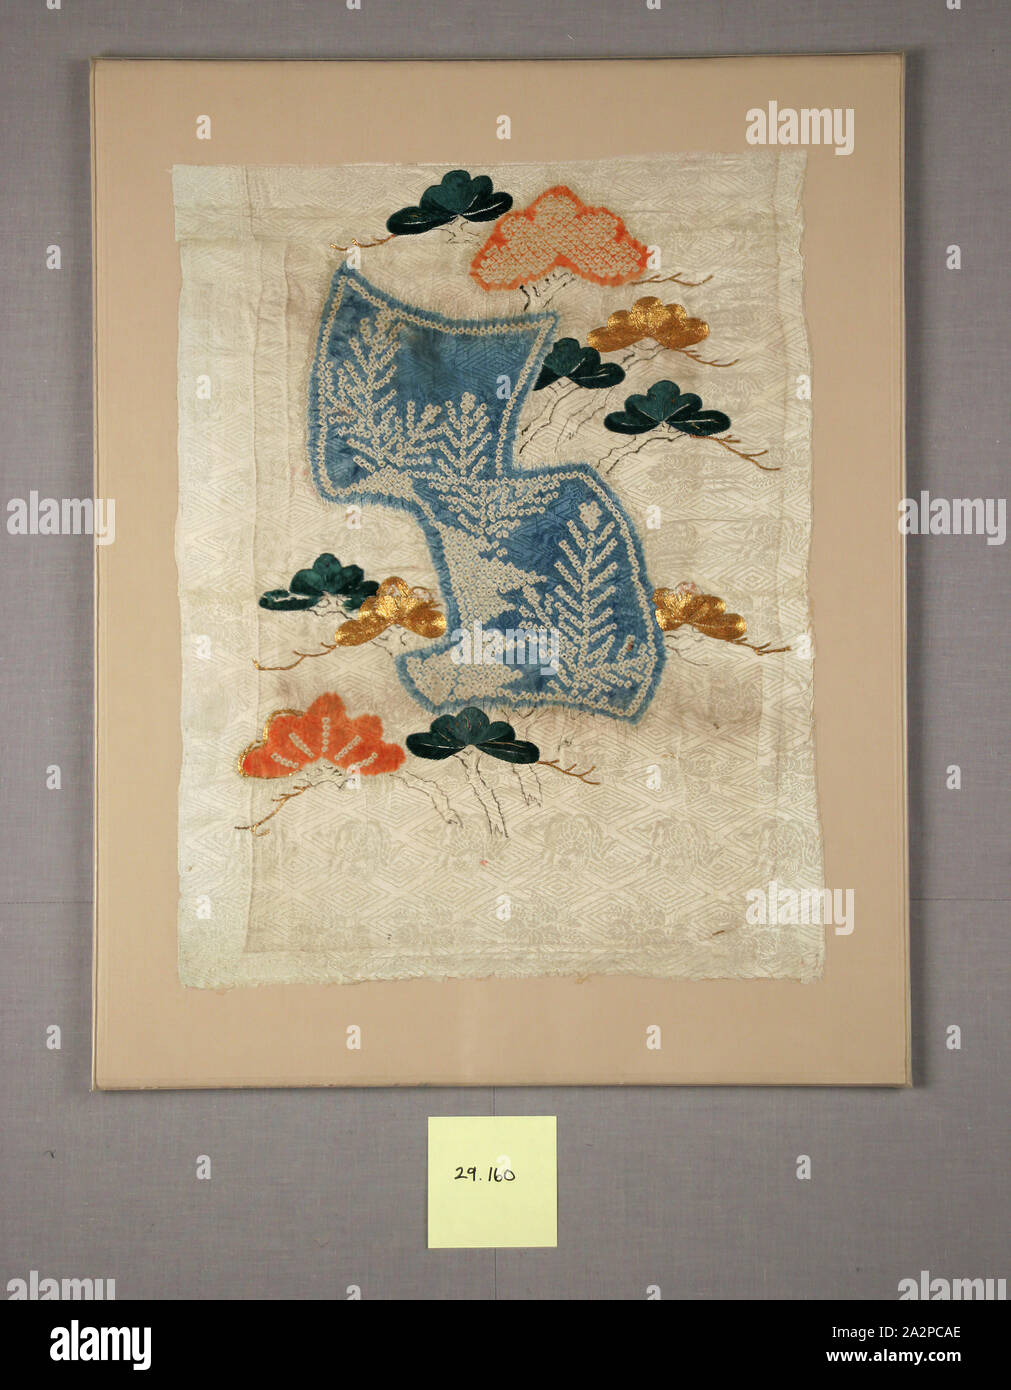 Sconosciuto (giapponese), un frammento di un kimono con piccole maniche, 1804/1817, si adagiò gold-avvolto di Seta e cascami di seta ricamo, tie-tintura, e l'inchiostro su seta damascata, 18 7/8 x 11 7/8 in Foto Stock